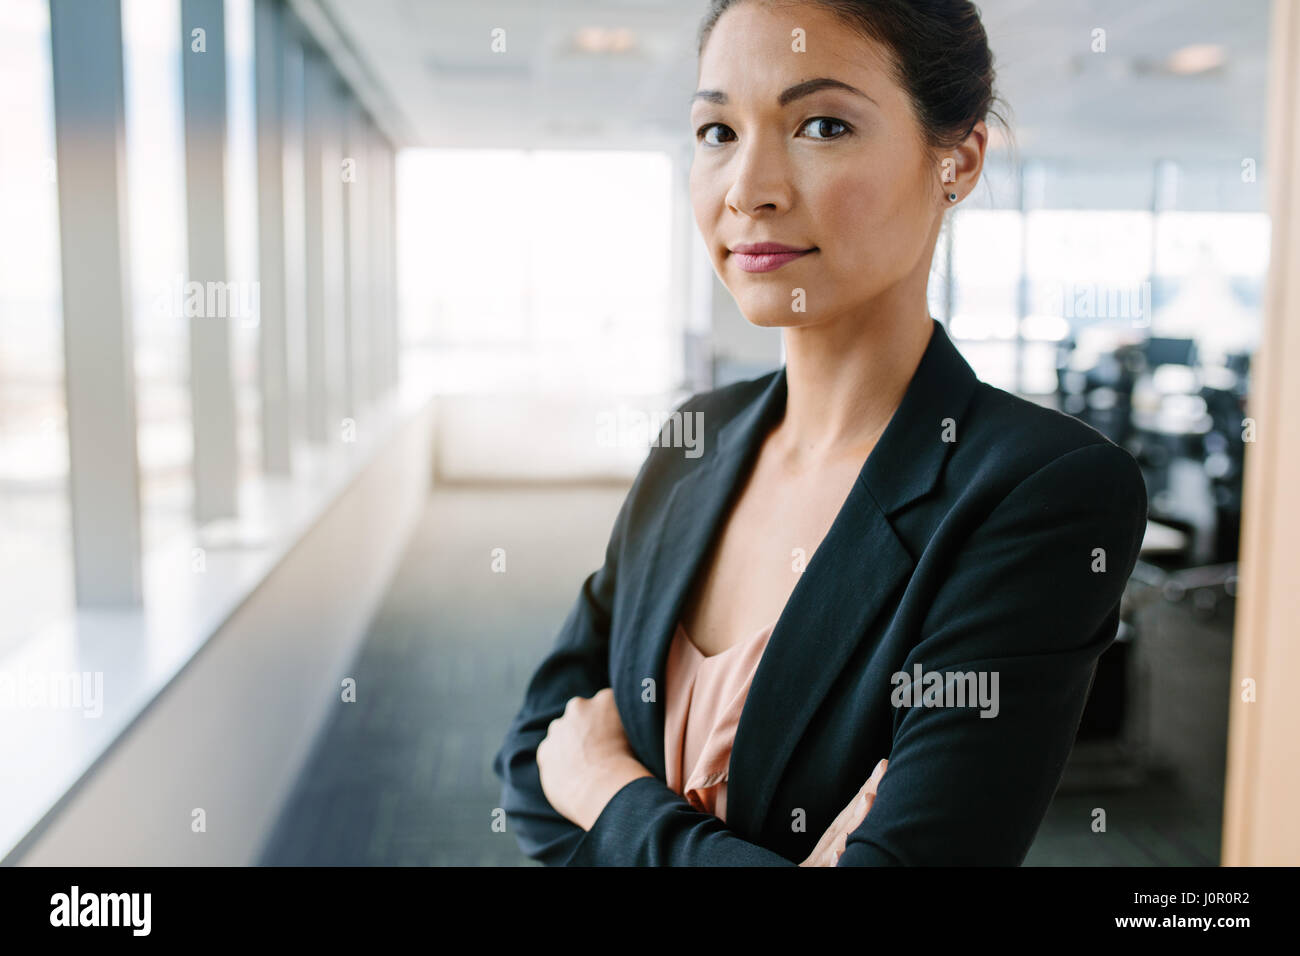 Portrait of mature businesswoman standing in office avec les bras croisés. Femme entrepreneur asiatique en litige looking at camera en toute confiance. Banque D'Images